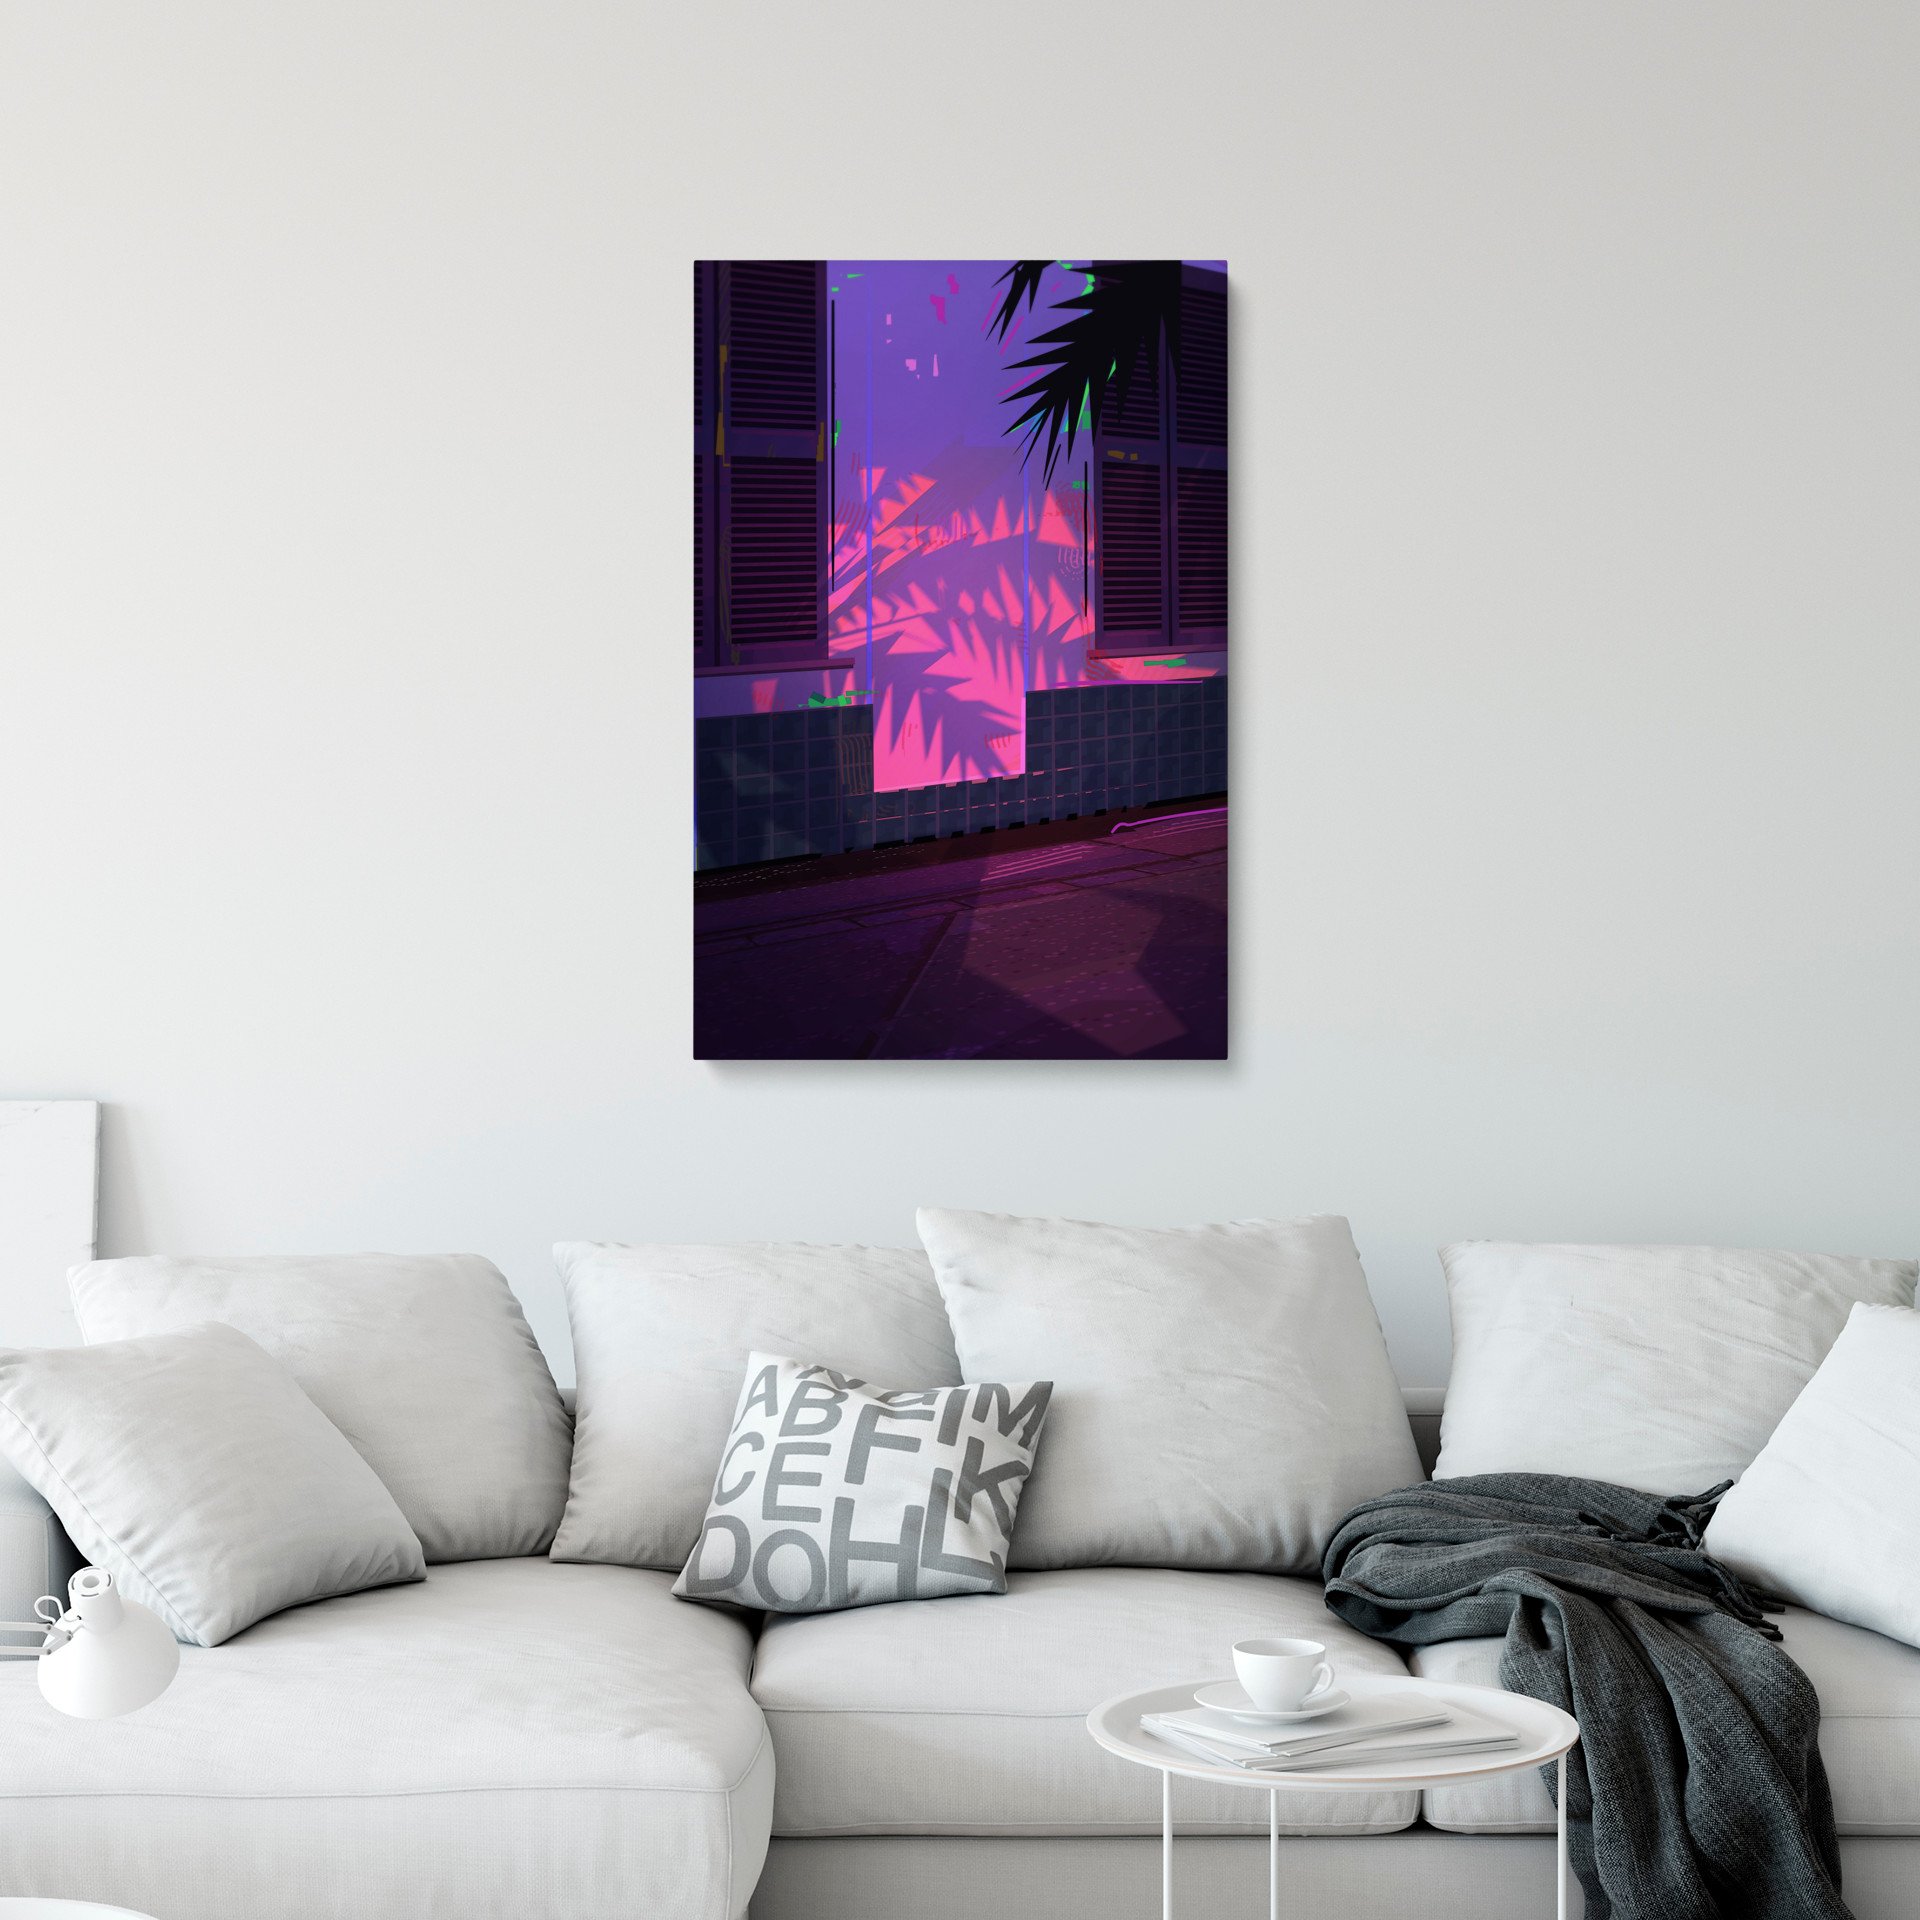 Картина на холсте: Пурпурные Пальмы - интернет магазин картин 47art.ru